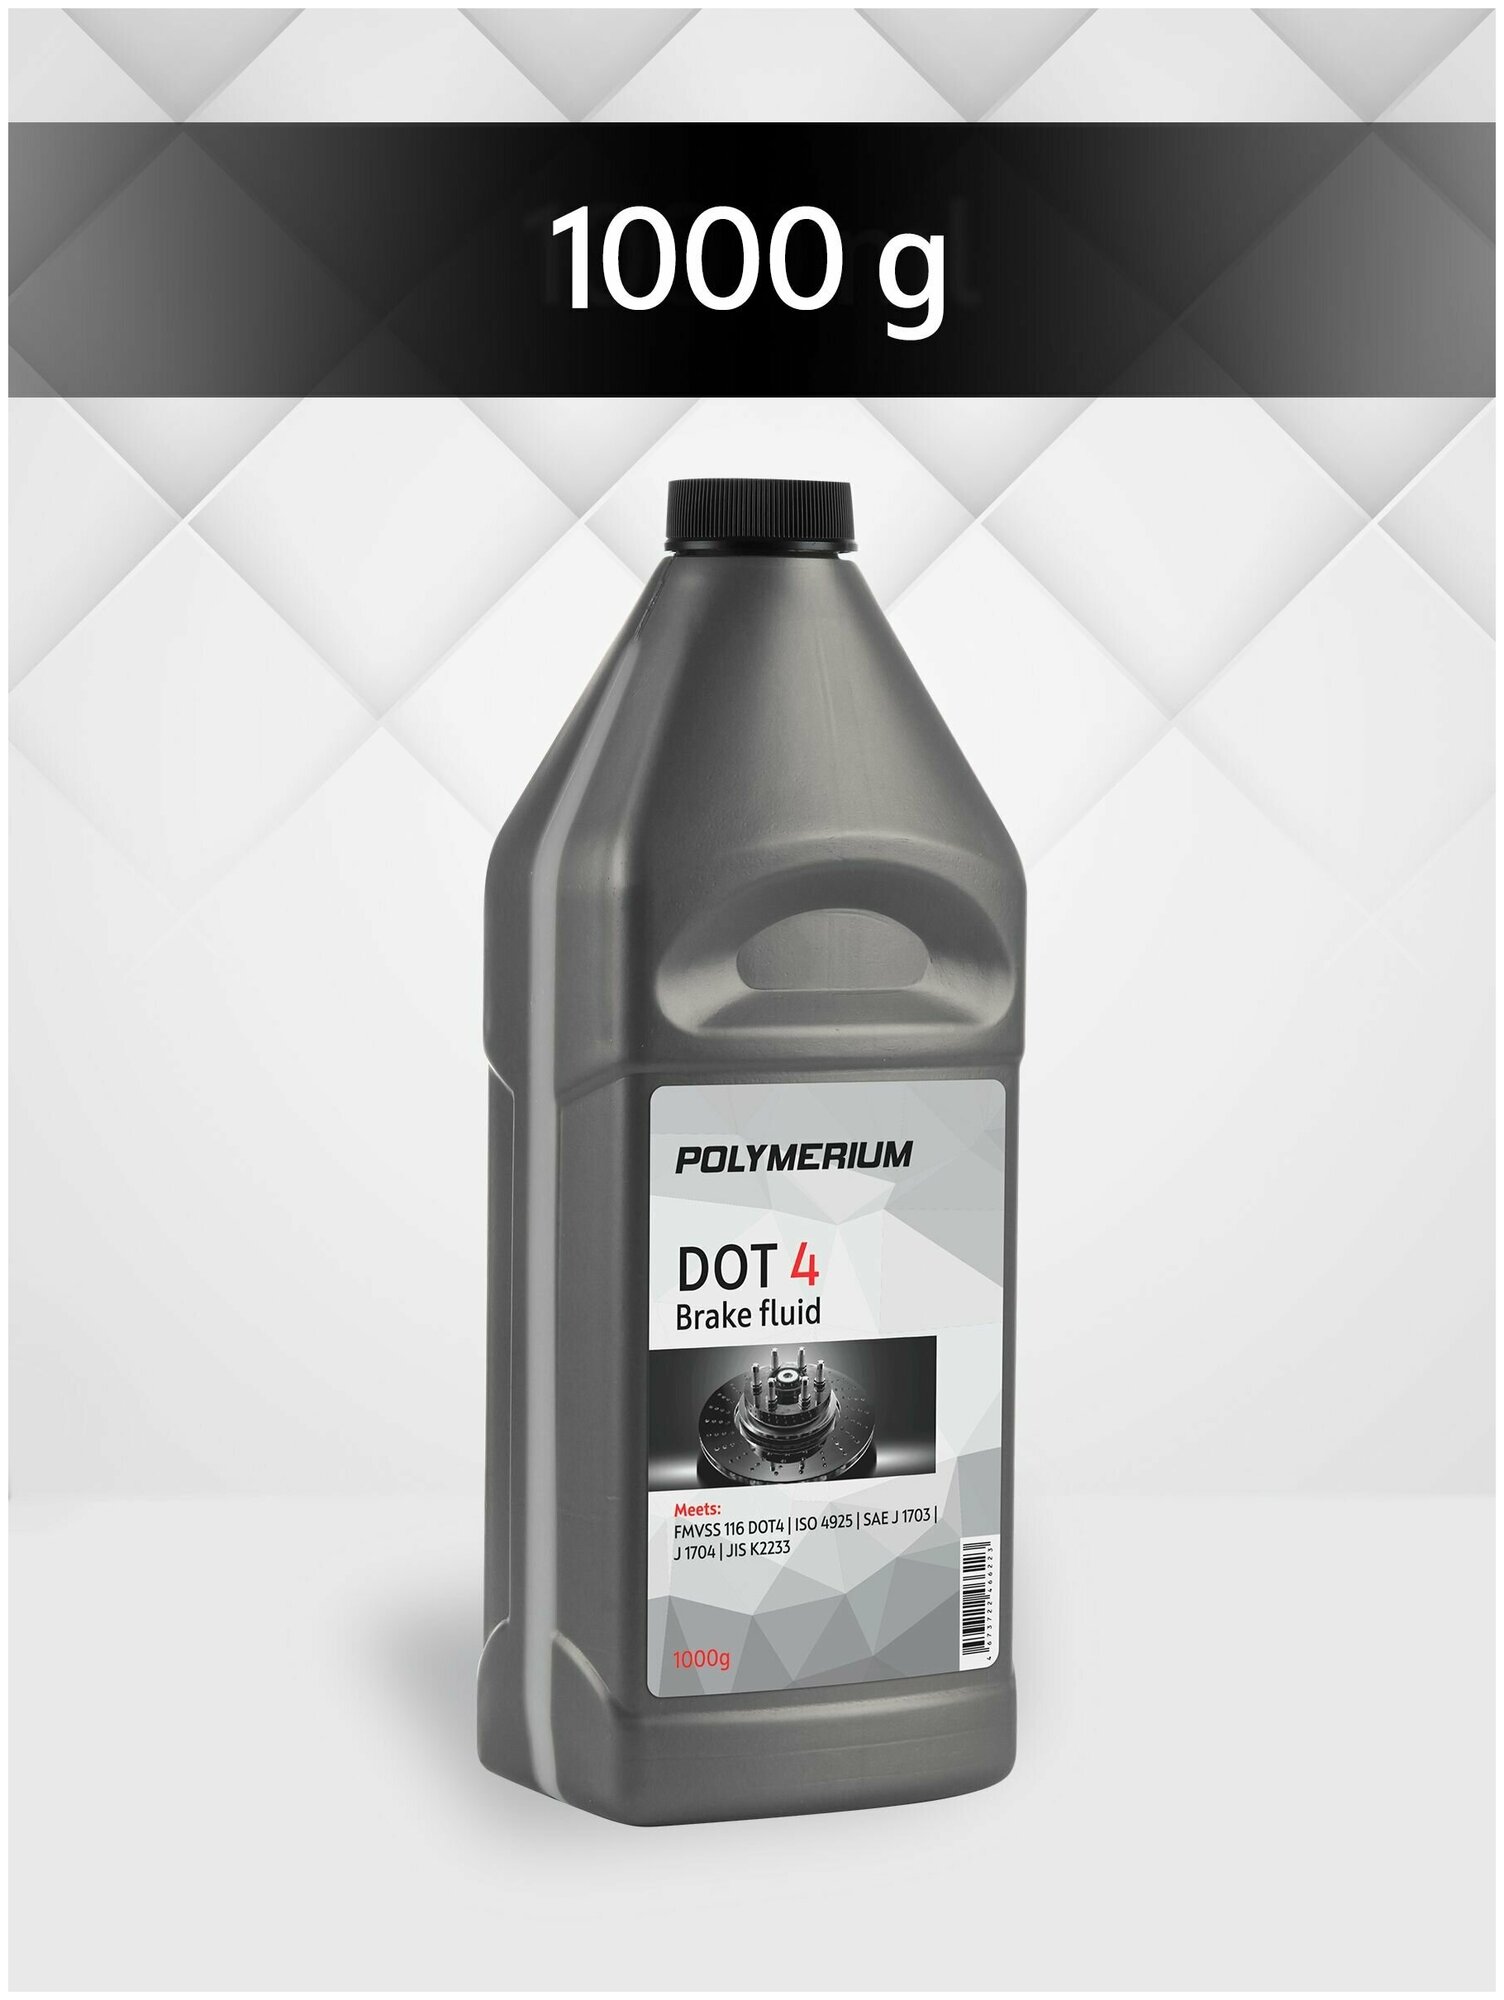 Тормозная жидкость класса DOT 4 жидкость для автомобиля дот 4 1000 гр